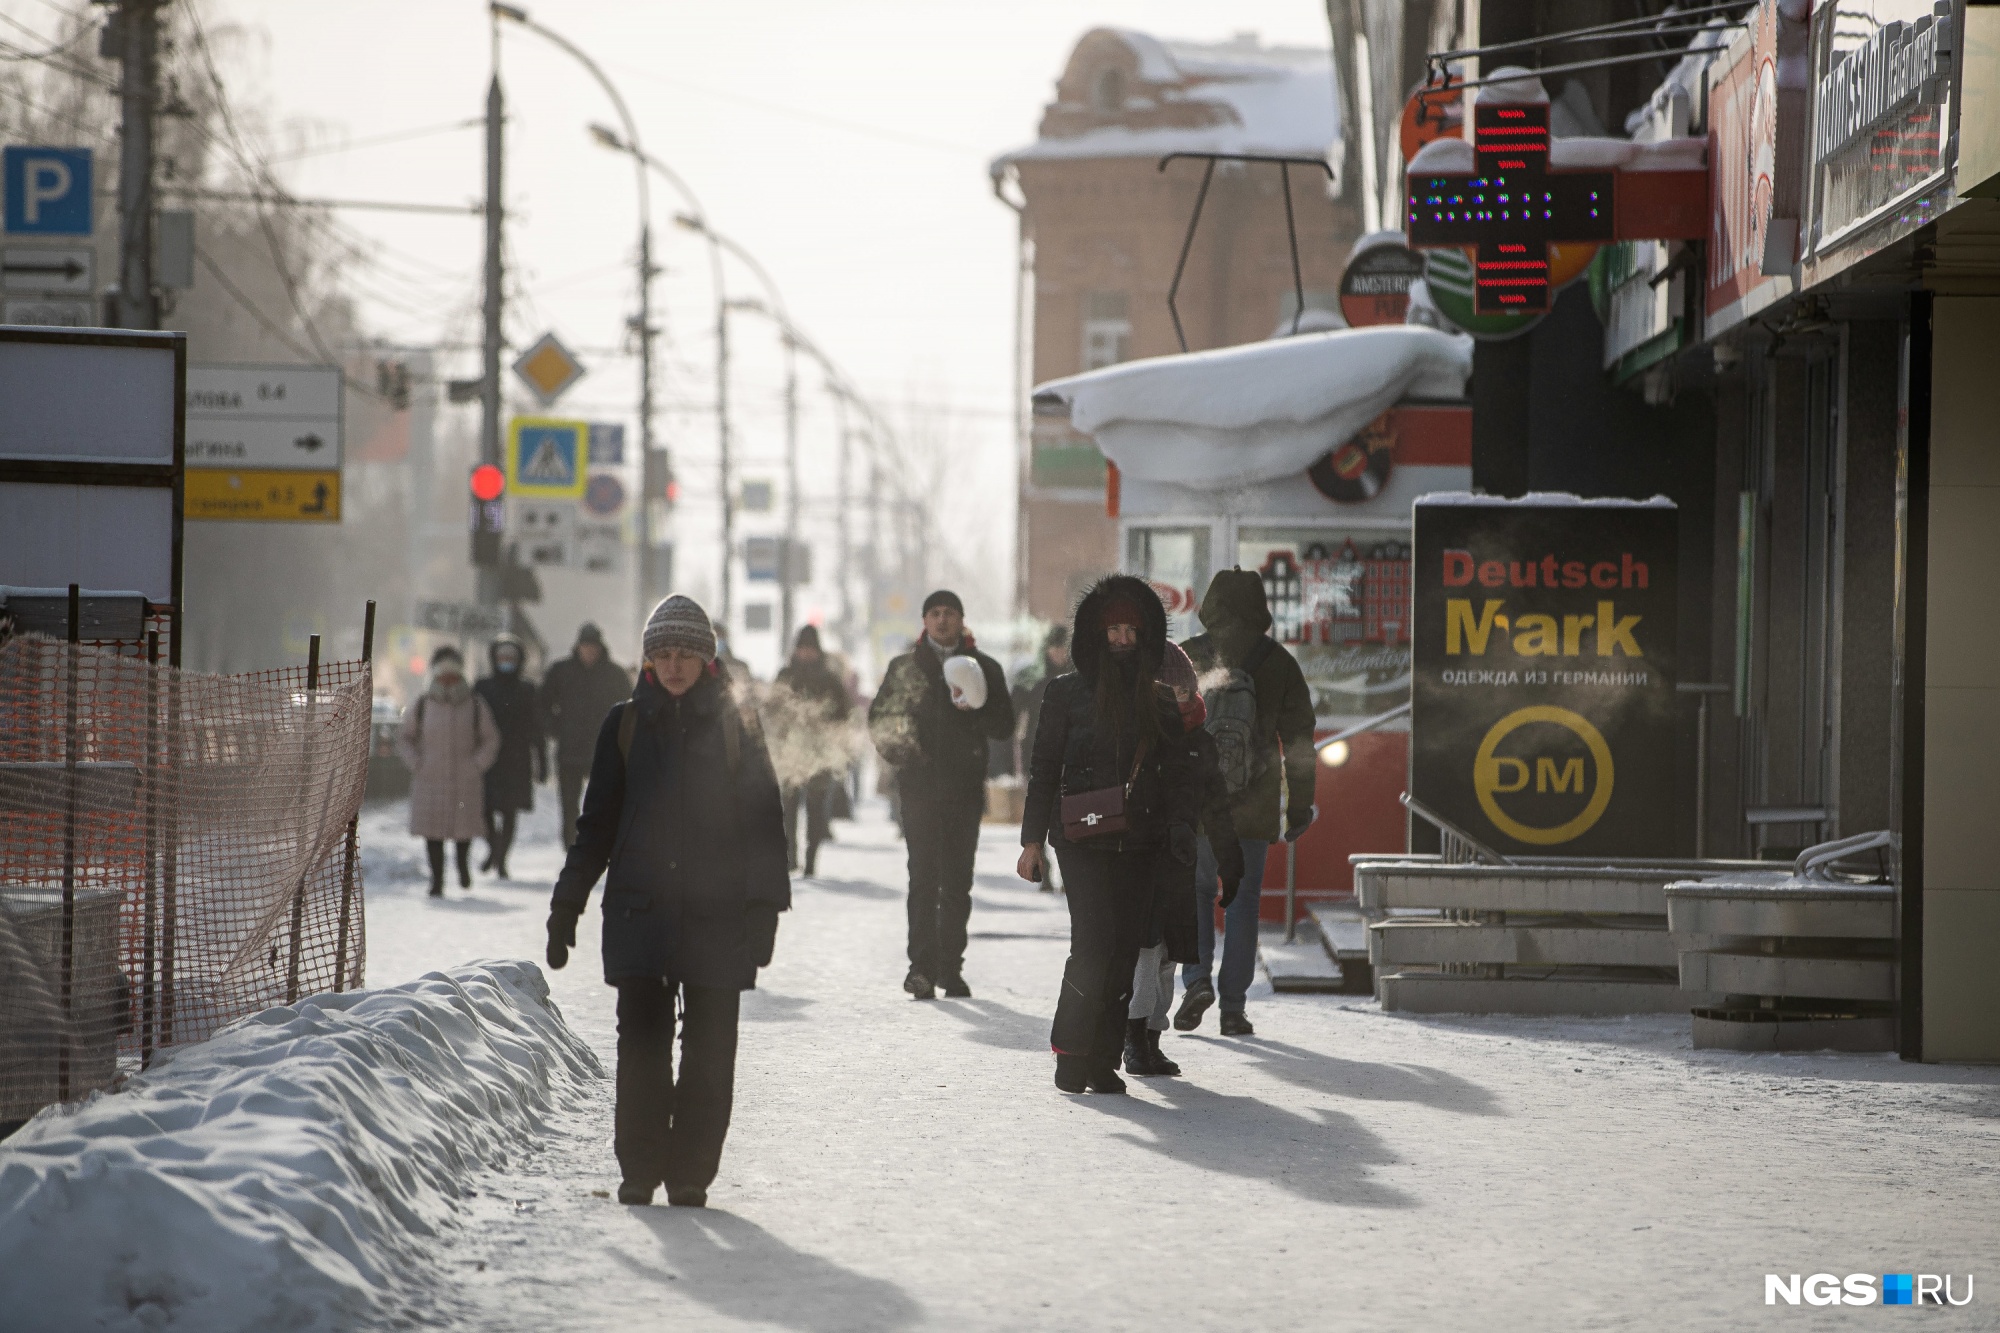 Суровая стужа: 10 кадров с улиц морозного Новосибирска, от которых идут мурашки